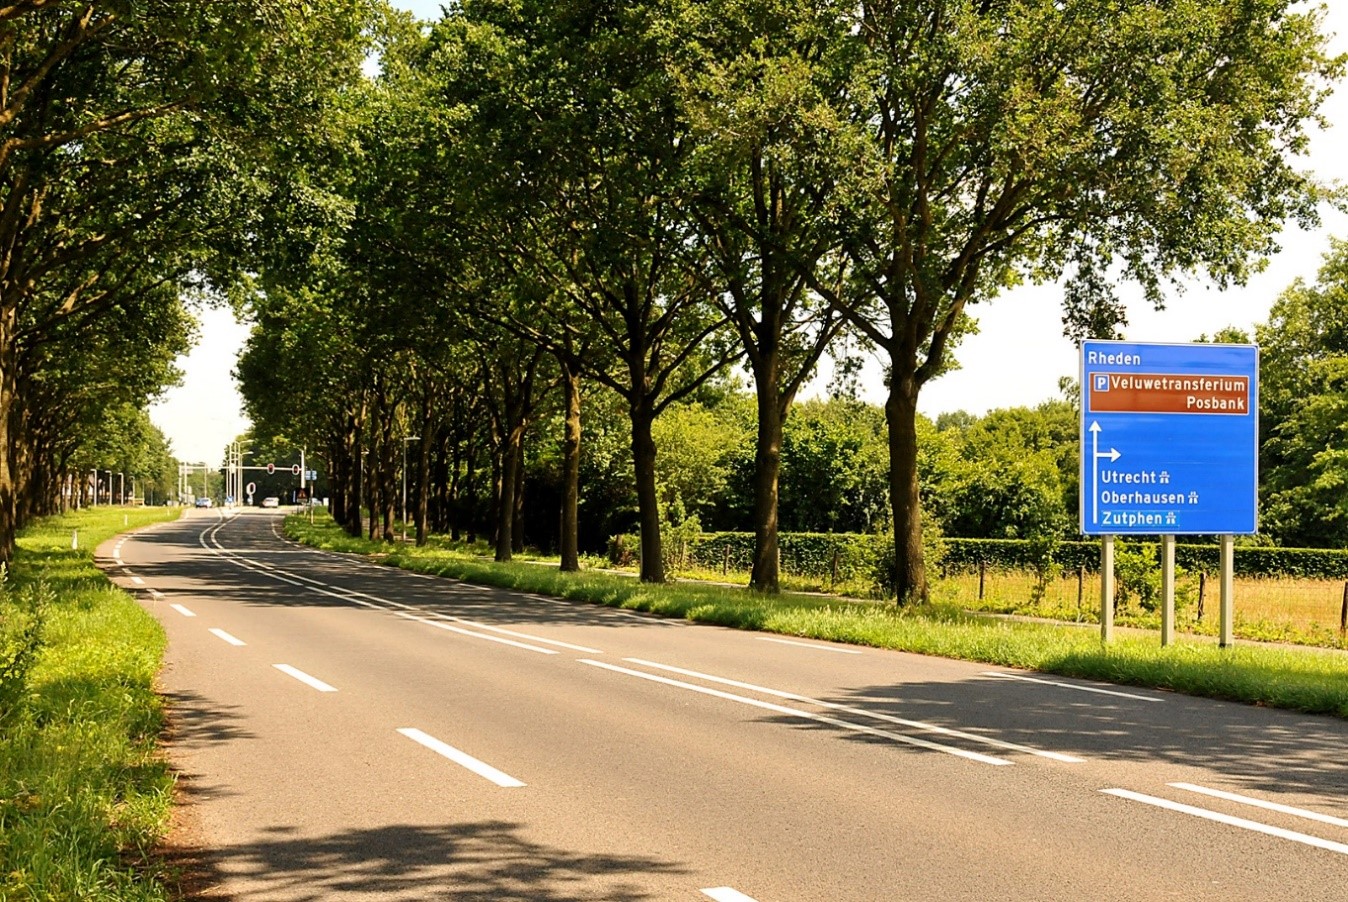 Een impressie van de aangrenzende Provinciale weg van Velp richting Rheden. In de verte bij de verkeerslichten is nog net de afslag naar de snelweg van de A.348 zichtbaar zoals het verkeersbord op de voorgrond duidelijk kenbaar maakt - Foto:©Ton Heekelaar.